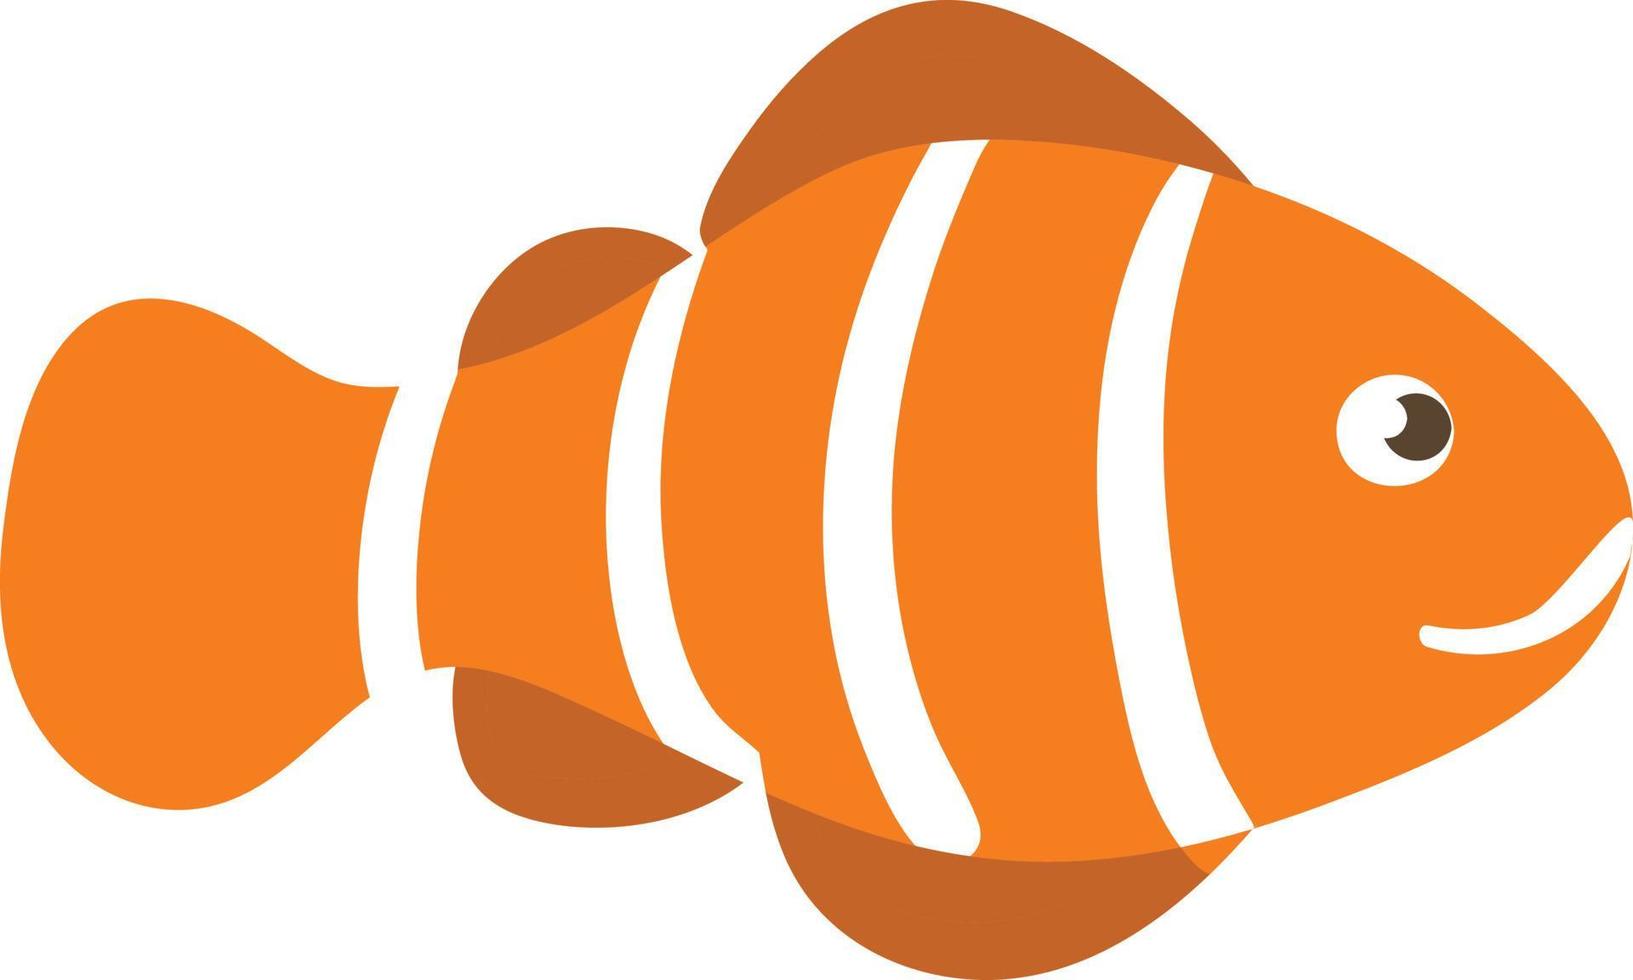 poisson-clown à rayures blanches orange souriant, poisson-clown. vecteur plat isolé de poisson clown mignon